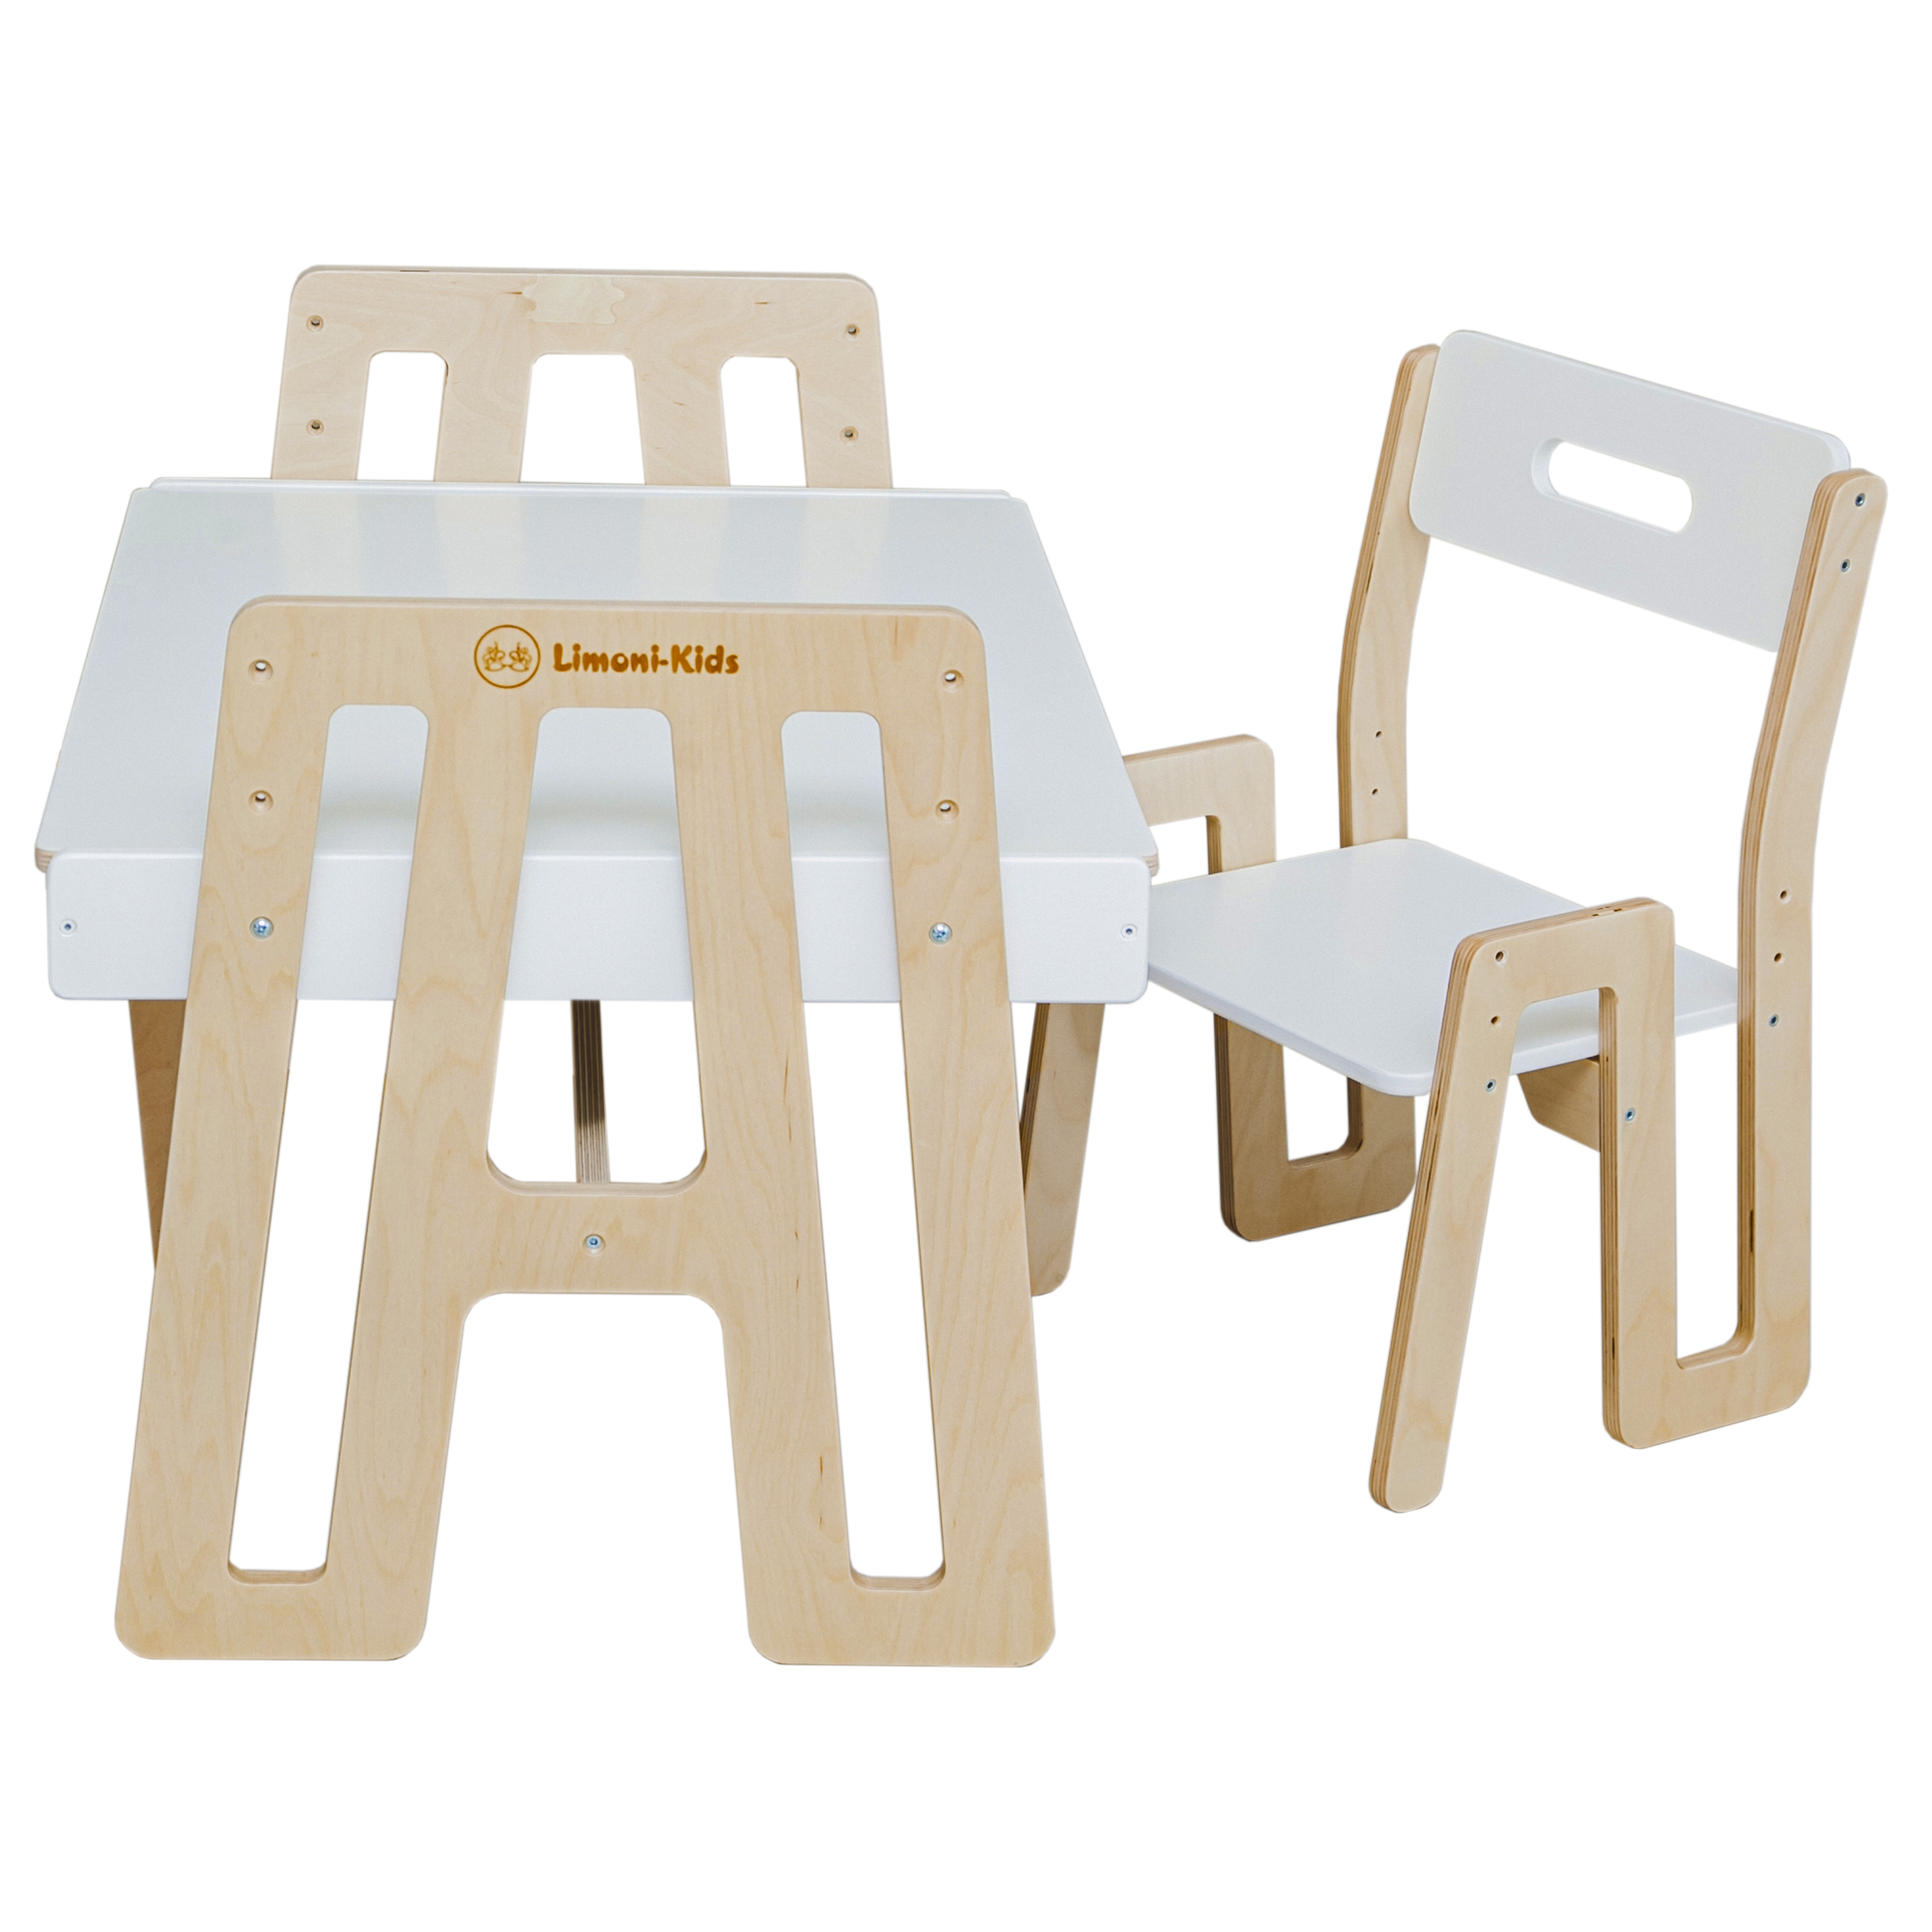 Детский стол и стул Limoni-kids Растущий набор с грифельной доской и контейнерами арт.0272 kidkraft современный детский игровой домик для улицы с кухней и доской для рисования